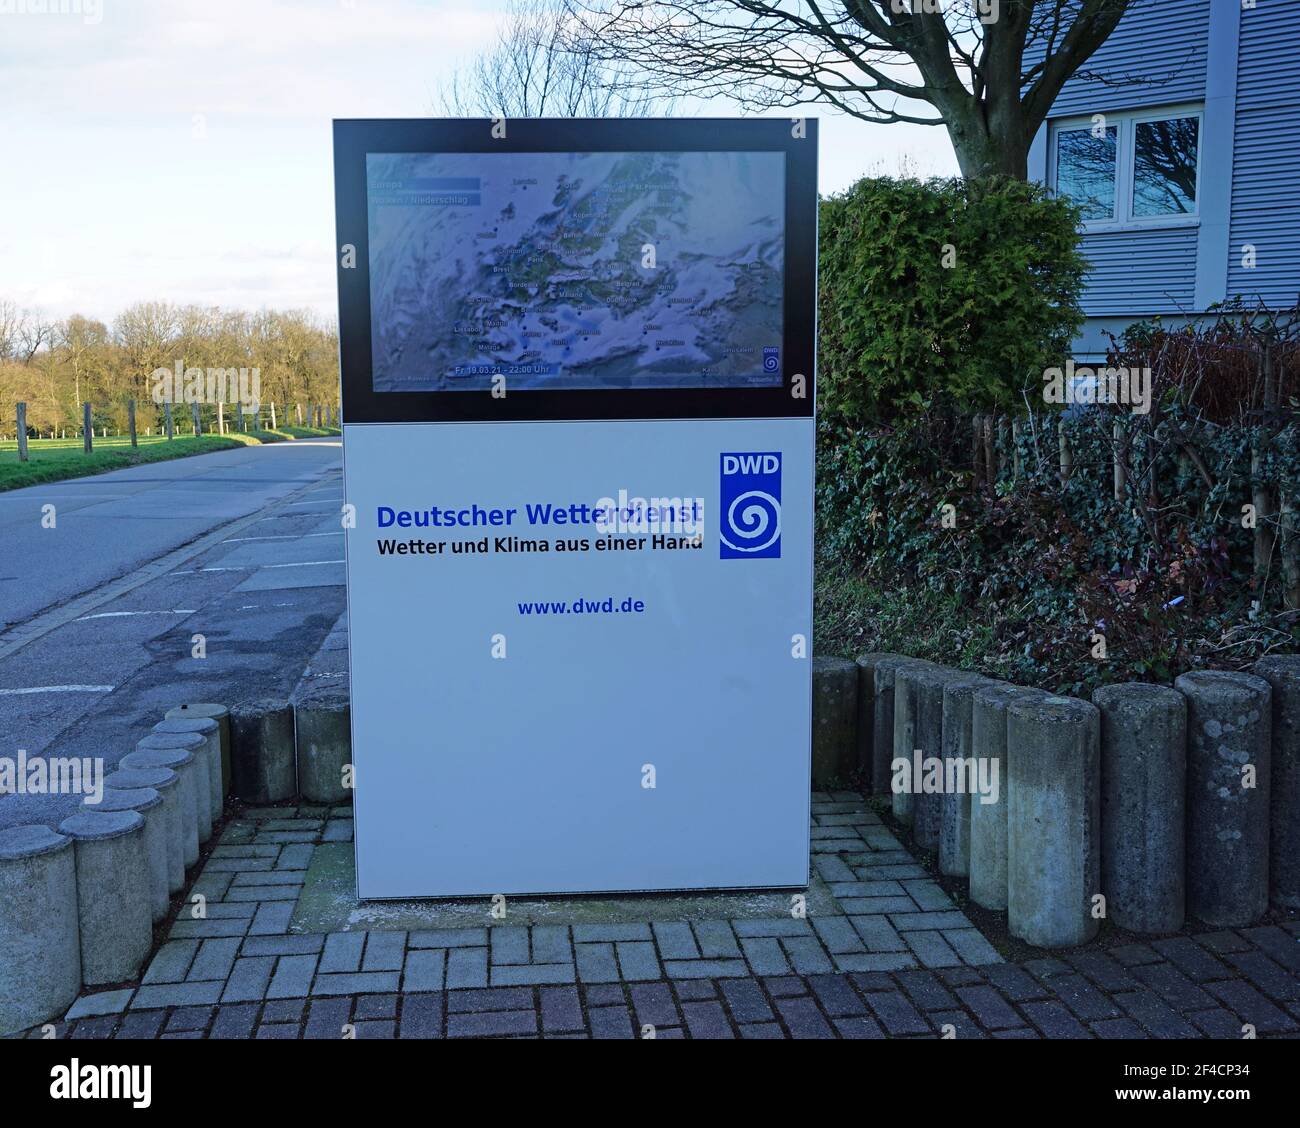 Deutscher Wetterdienst ( DWD), Schild am Eingang mit aktueller Wetterkarte, Essen Bredeney, NRW, Deutschland, Europa, Europe Stock Photo